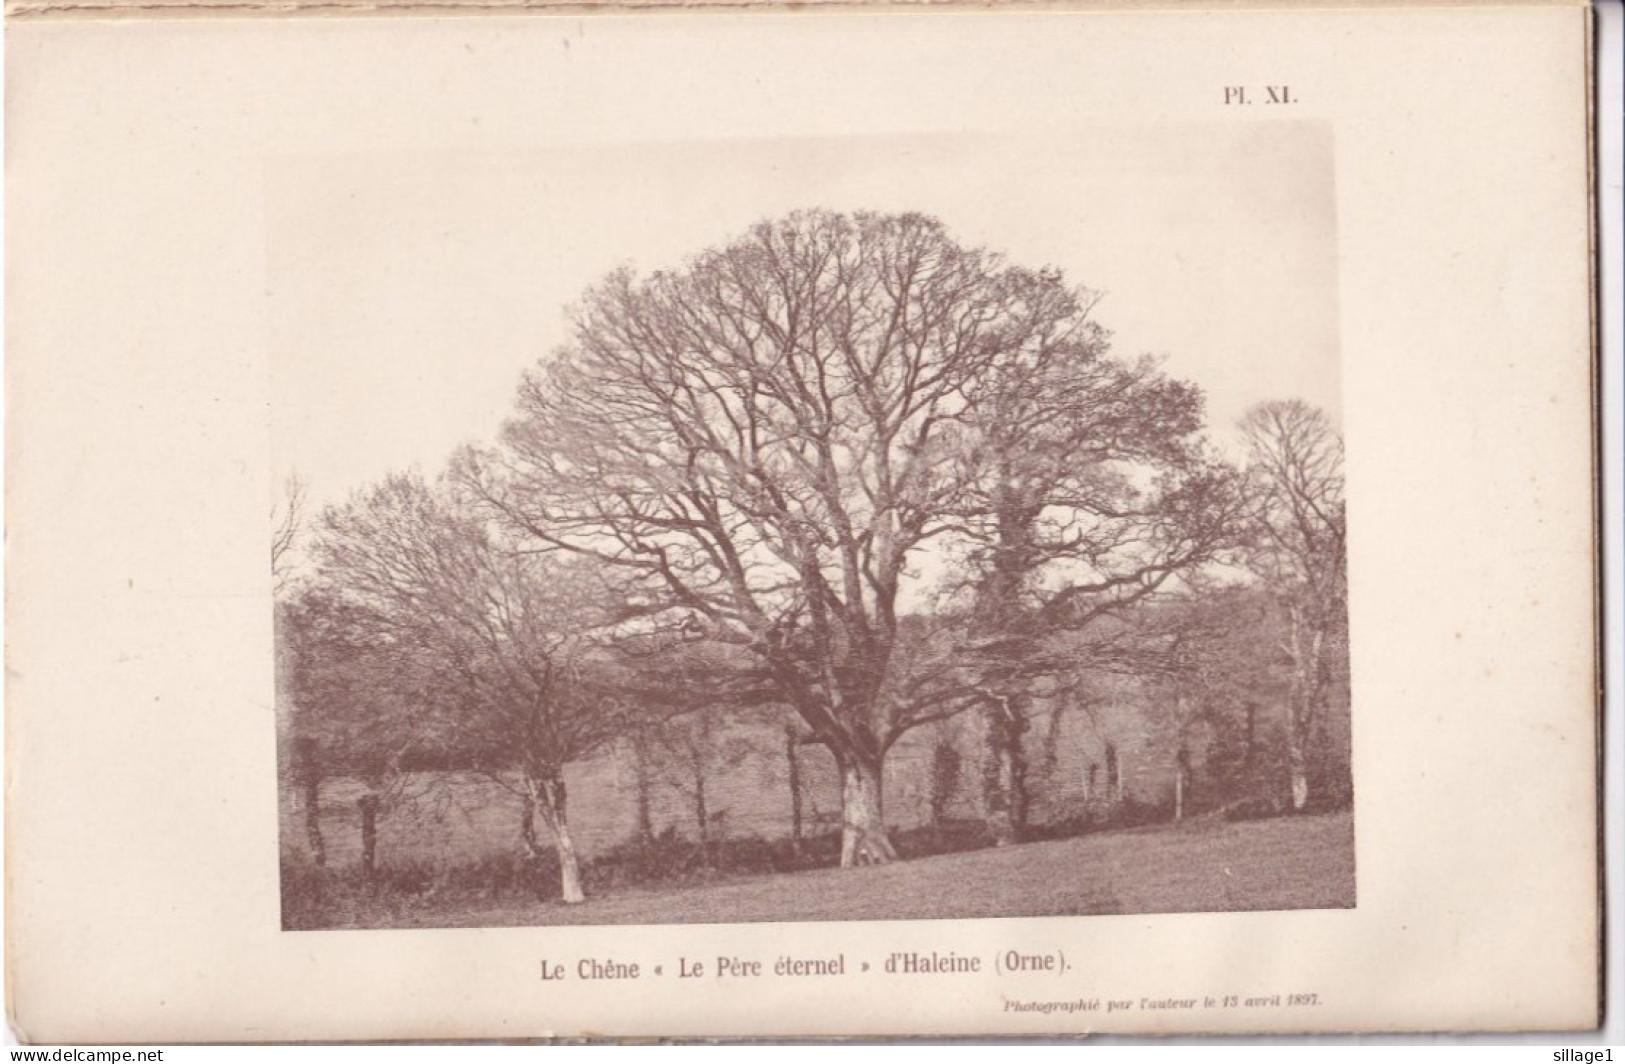 Haleine (Orne 61) Le Chêne " Le Père éternel " D'Haleine  (Orne) - Photographié Le 13 Avril 1897 - Autres Plans